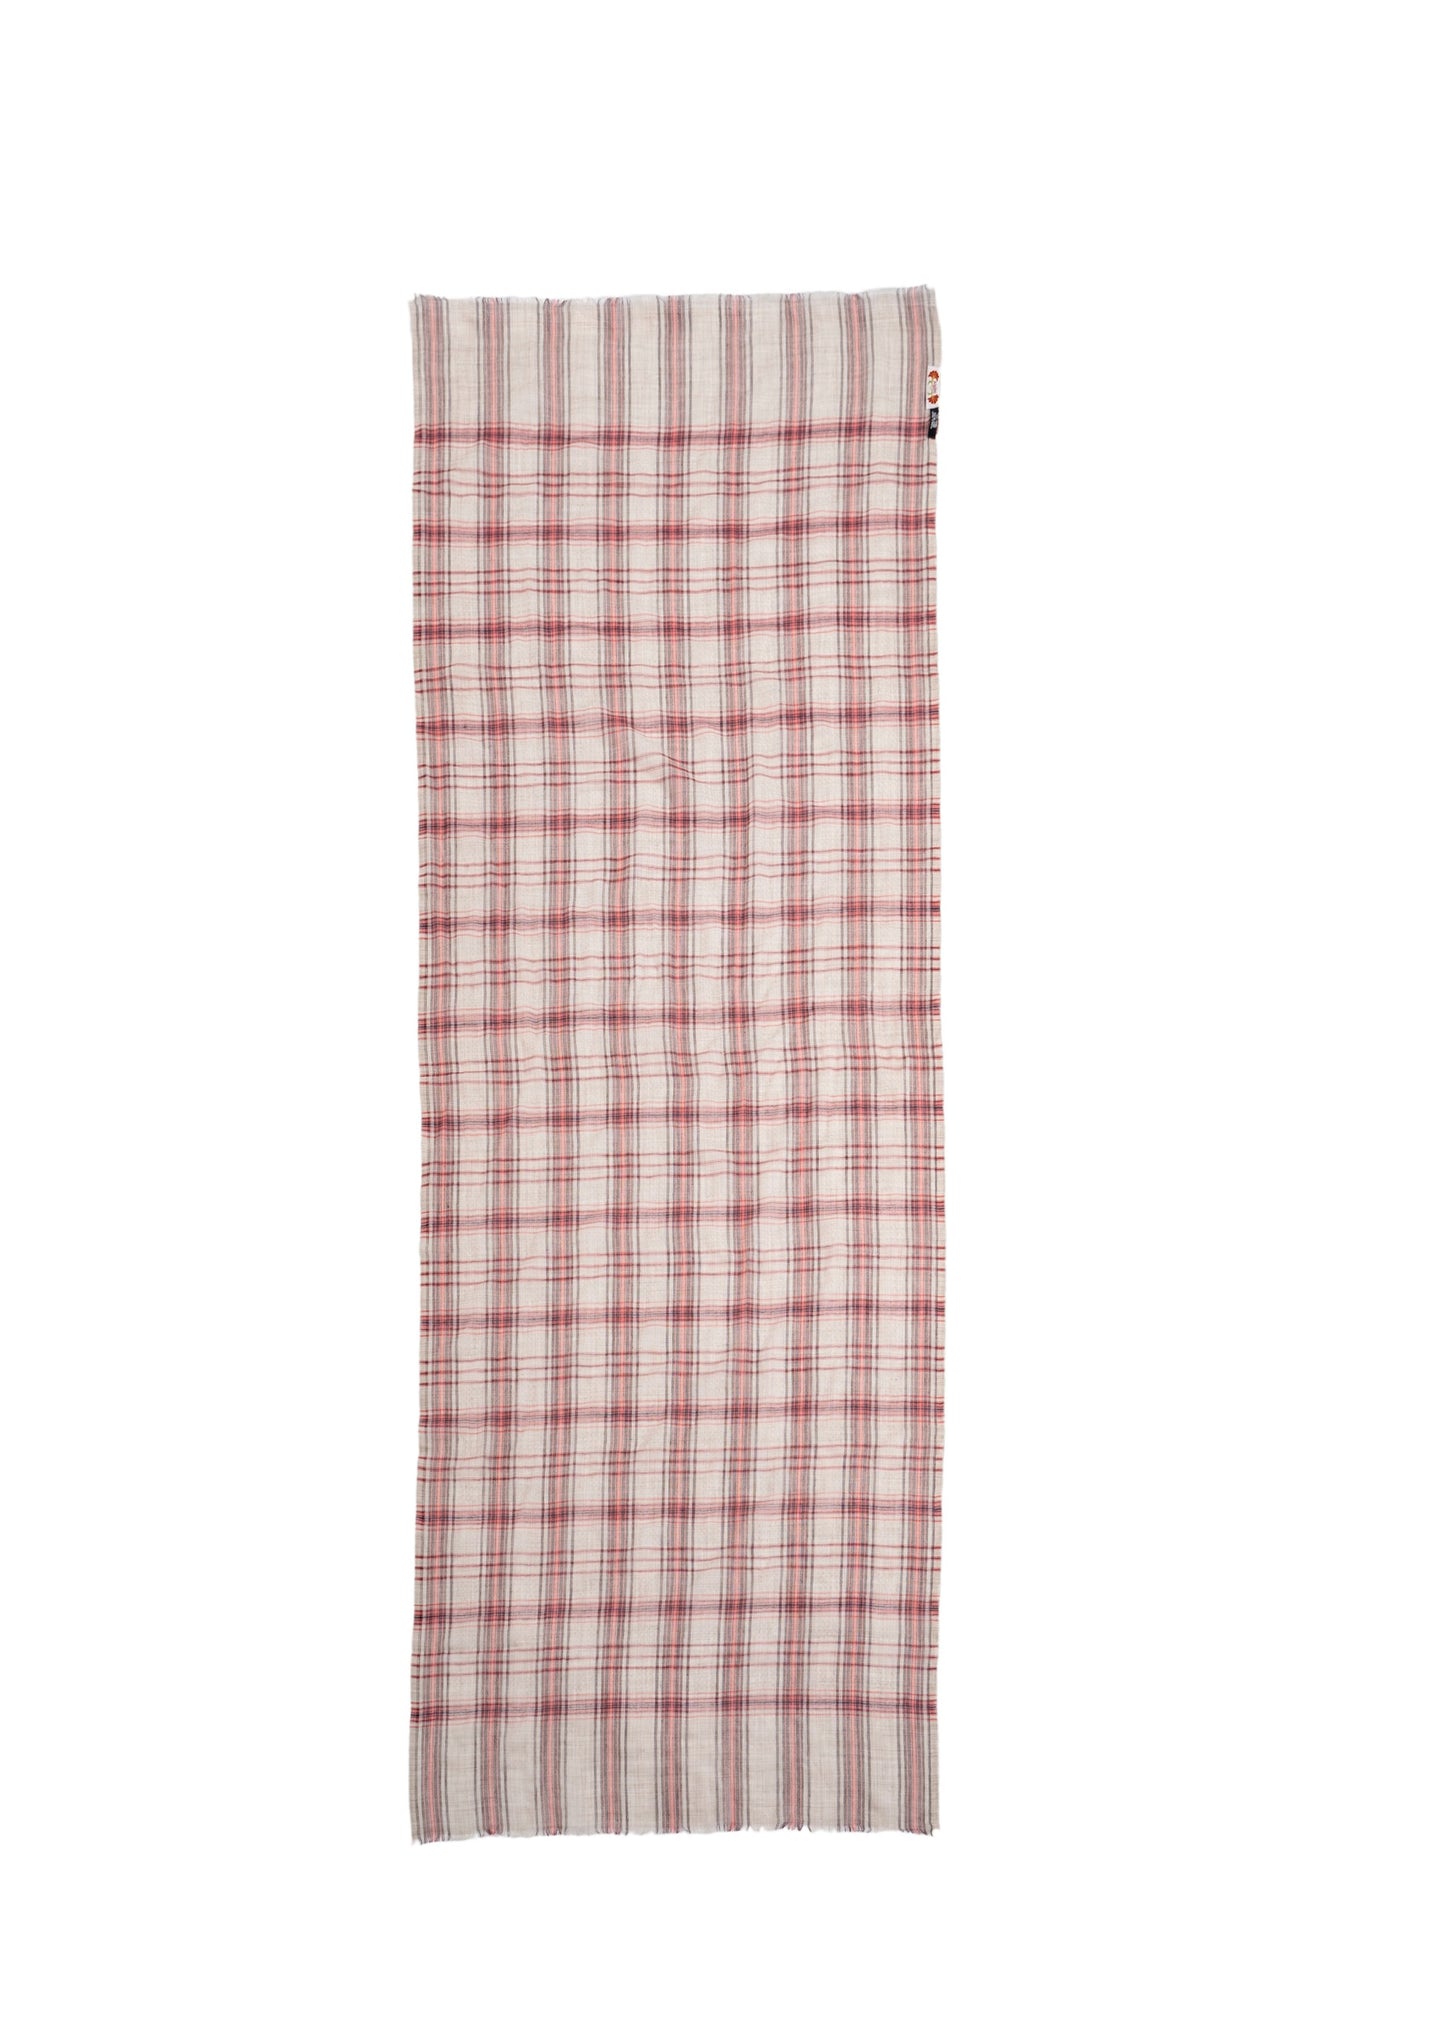 Sciarpa Elegante disegno Tartan Madras Check con Colori rosa grigio